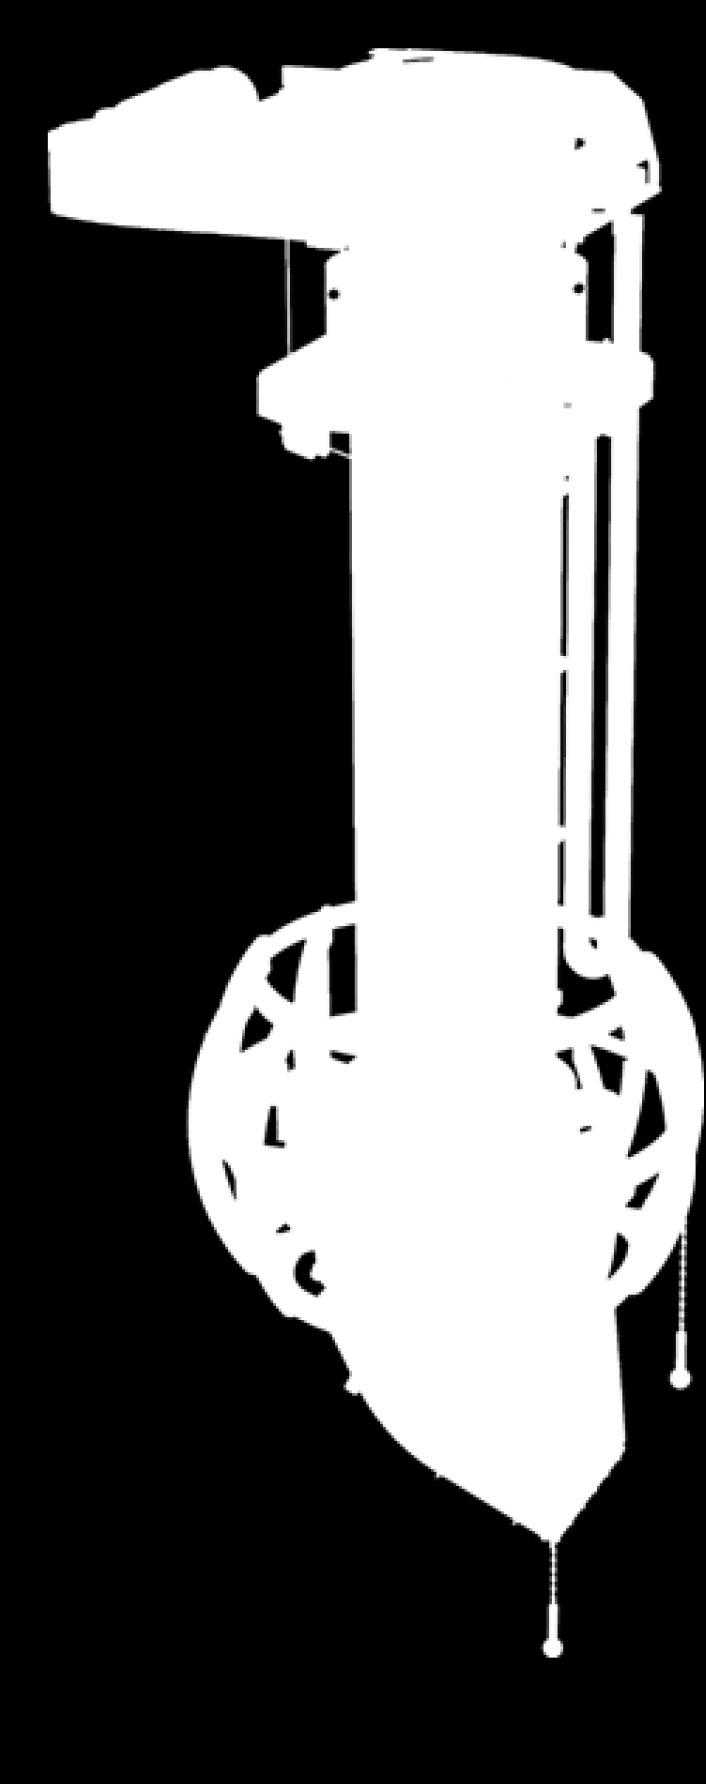 tubusy DESIGN elektrovrátek s integrovanými koncovými a havarijními spínači (horní a spodní pracovní poloha, horní a spodní havarijní poloha) spínač vyvěšení lan čidlo plnění 4x náklonové otočná